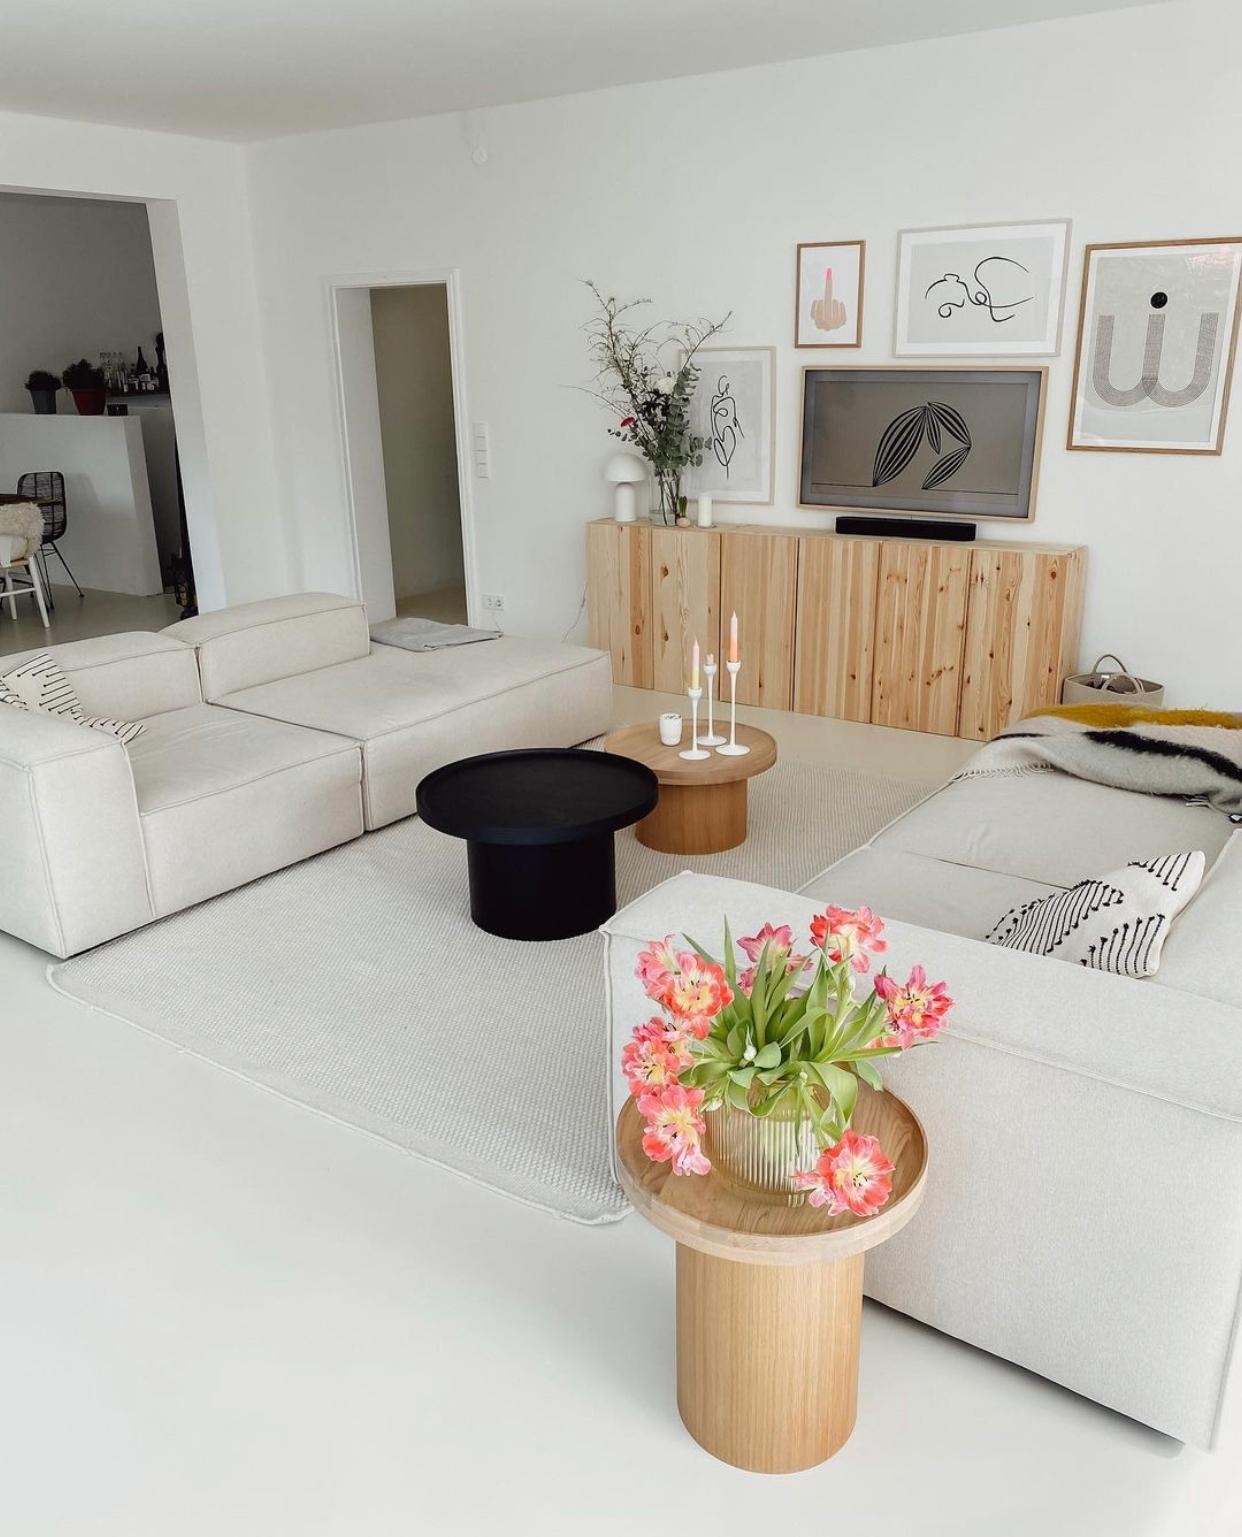 #wohnzimmer #allbeige #livingroom #couch #beige #hamburg #igershamburg #homestyling #couchliebt